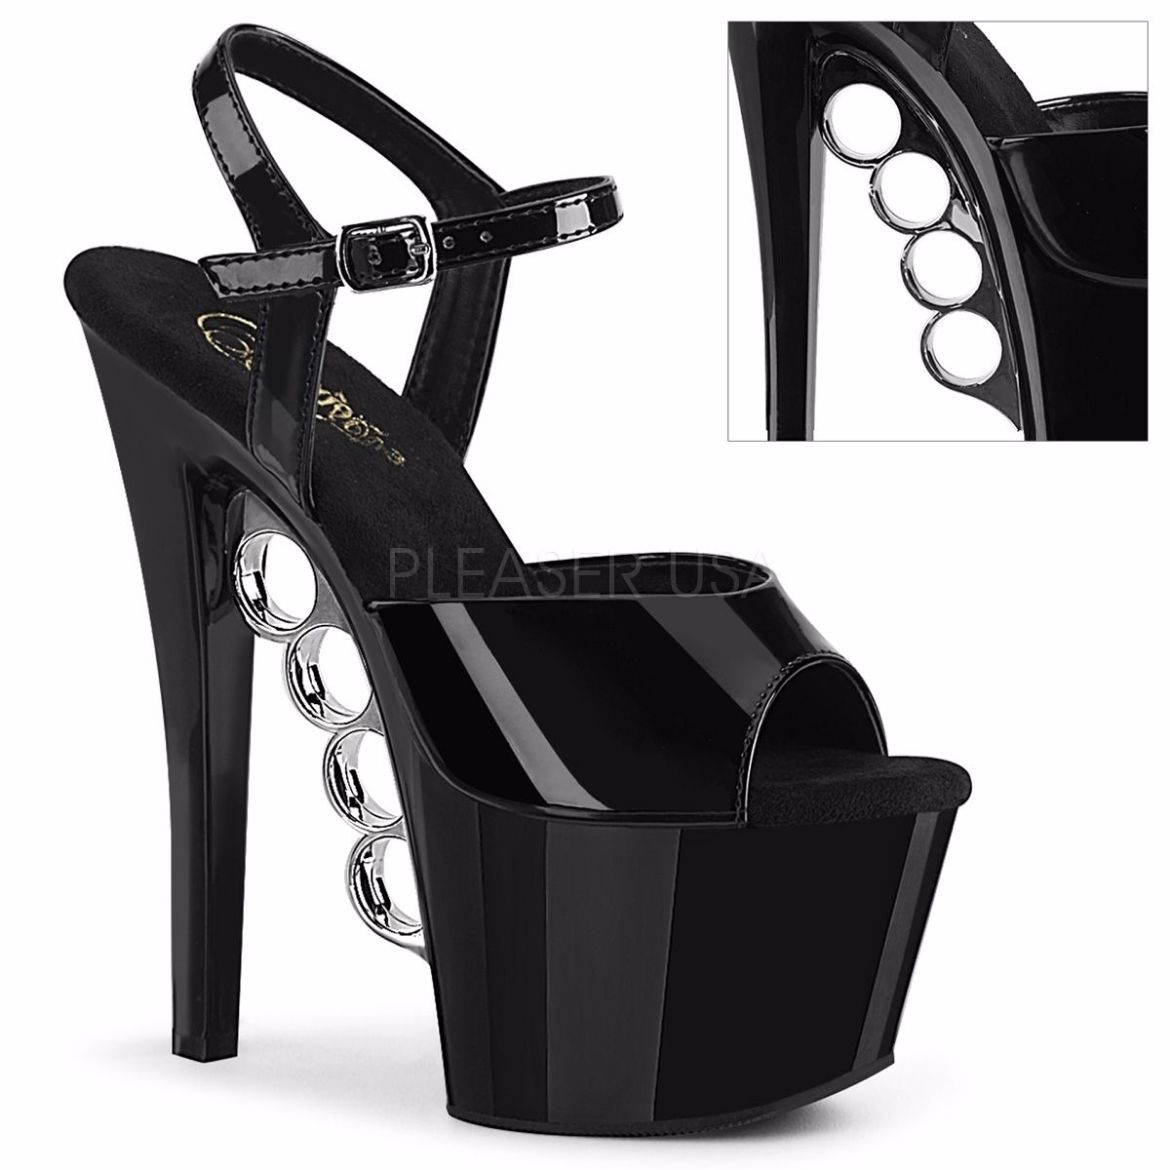 Product image of Pleaser KNUCKS-709 Black Patent/Black 7 inch (17.8 cm) Heel 2 3/4 inch (7 cm) Platform Ankle Strap Sandal Shoes